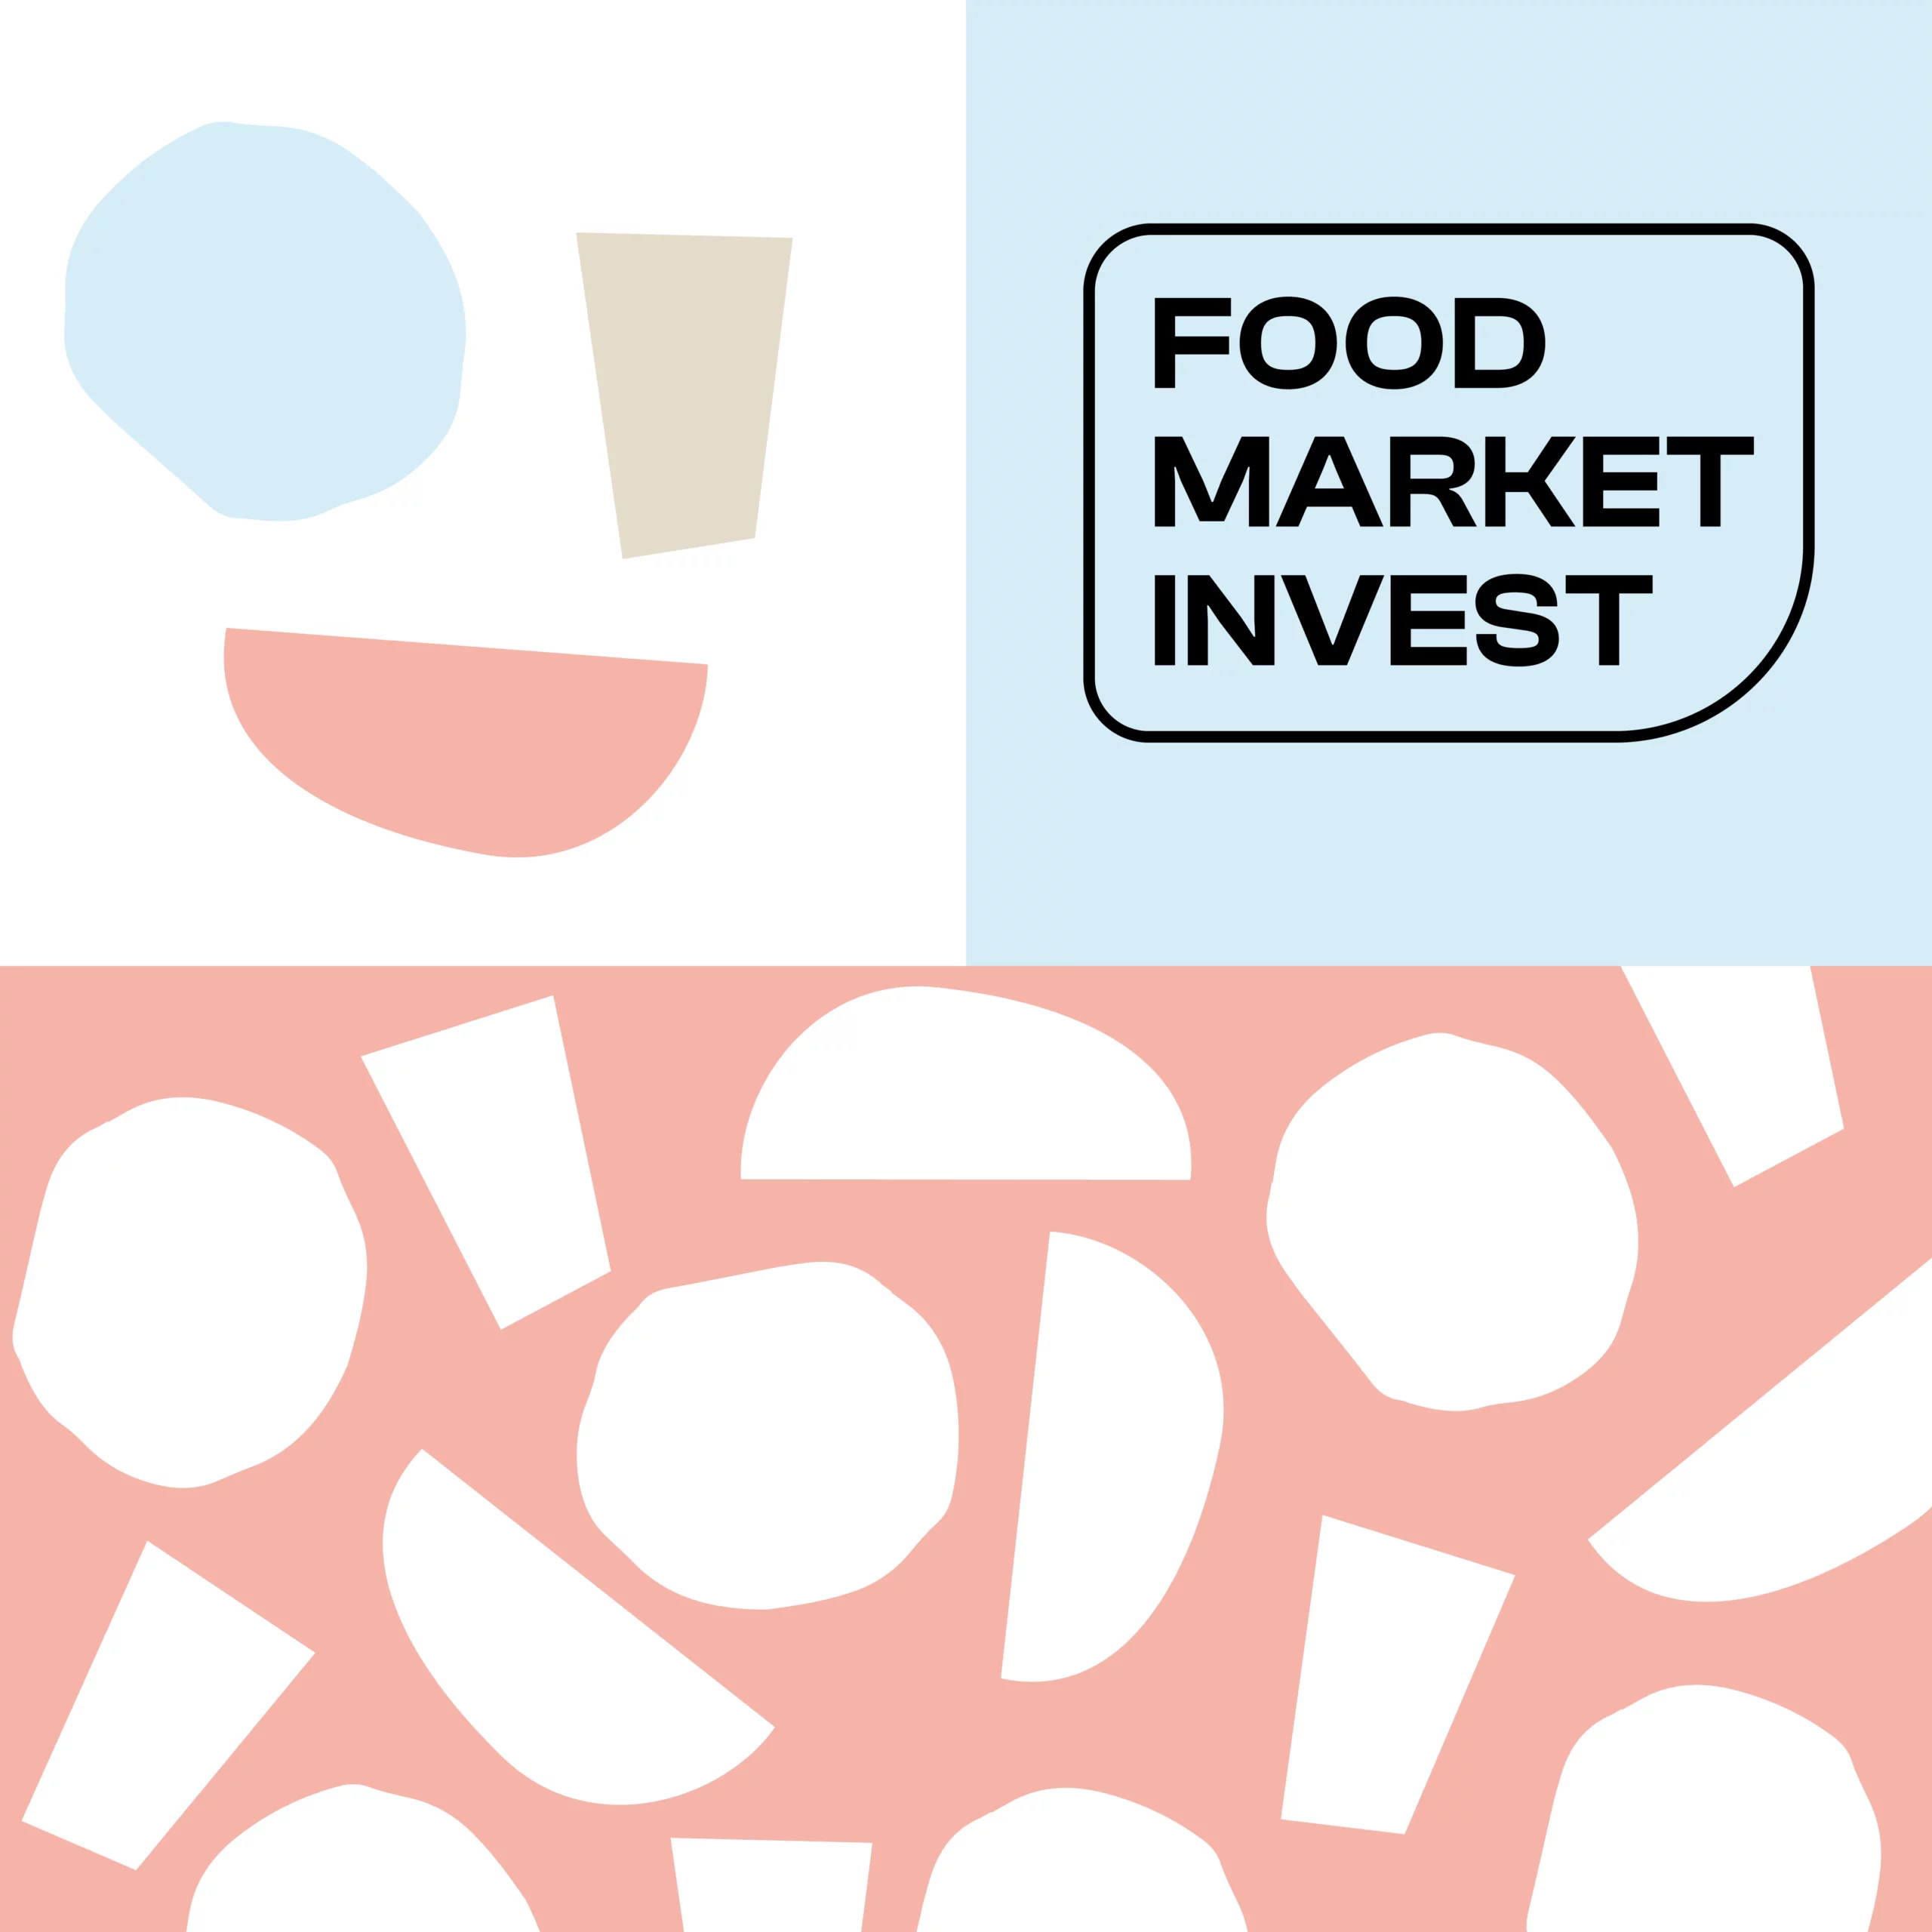 Éléments graphiques du Food Market Invest.